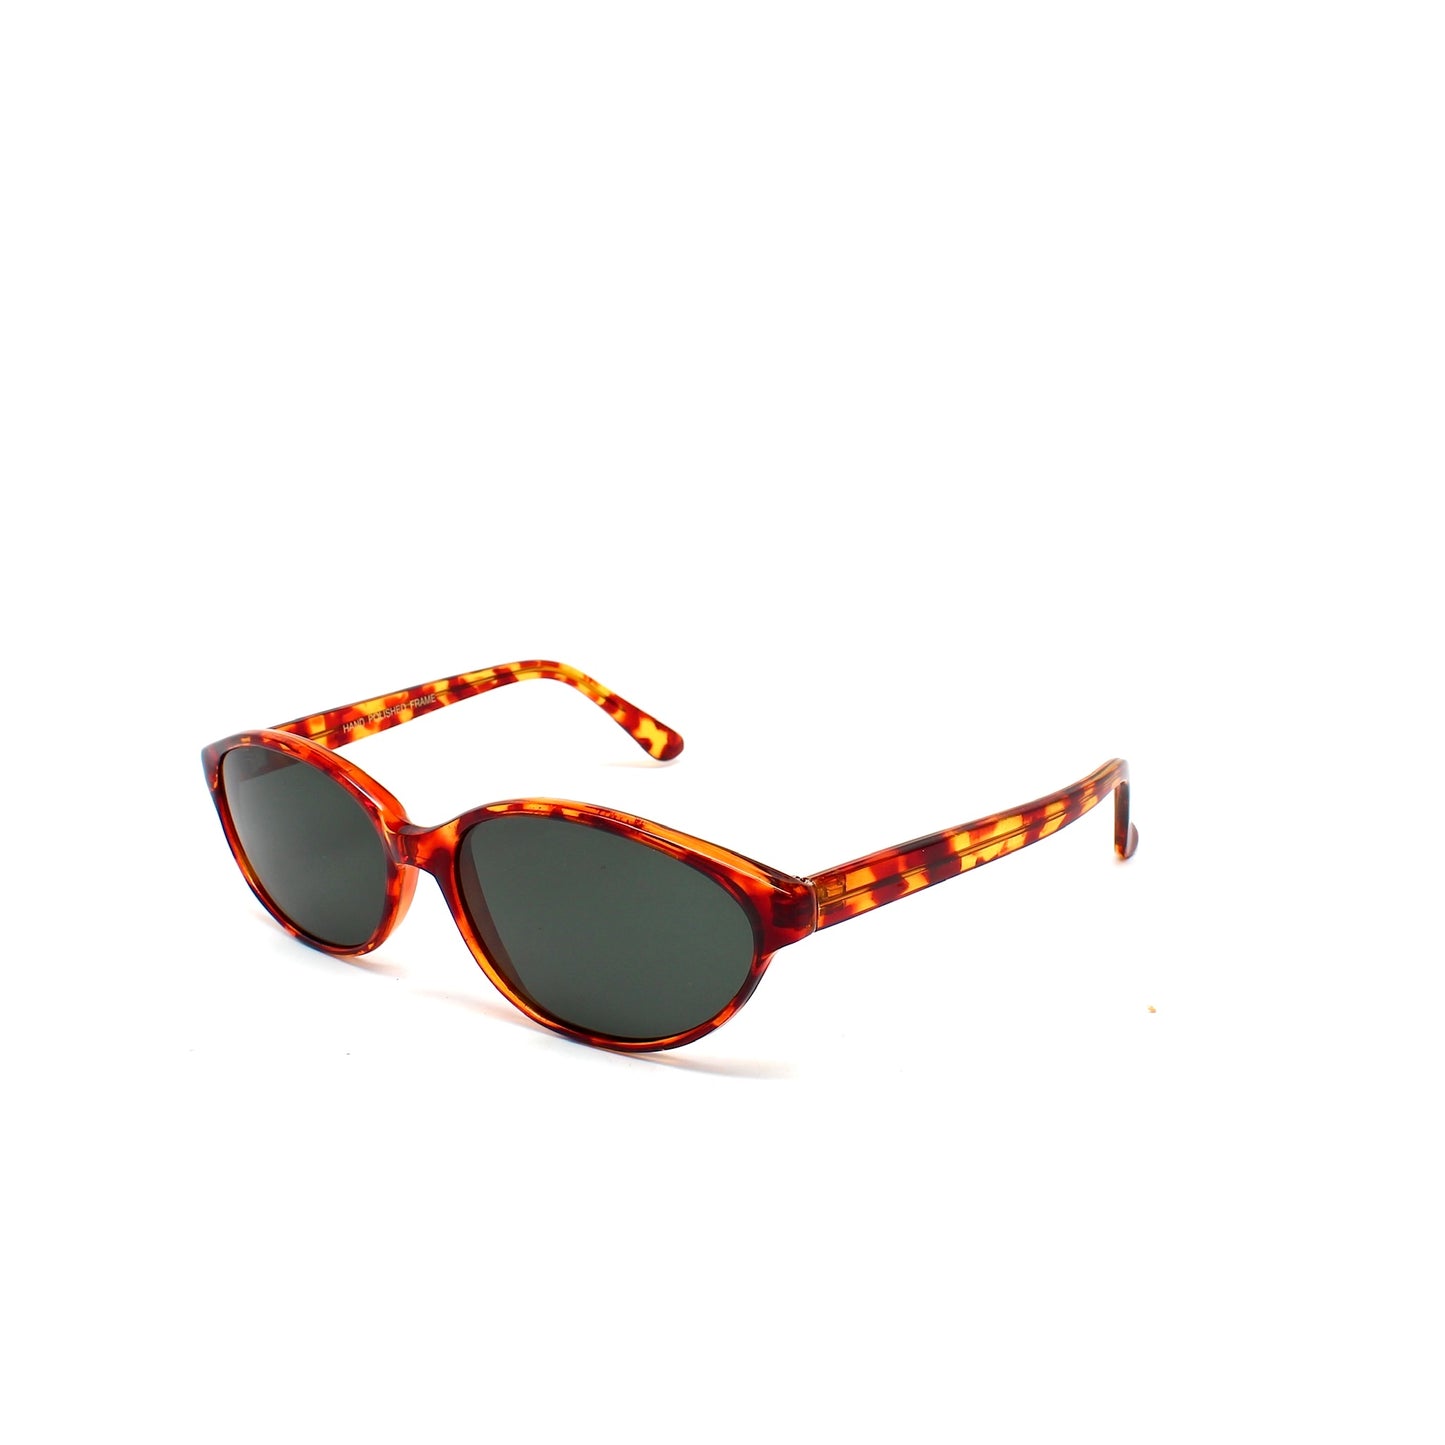 Deadstock Melrose V2 90s Oval Sunglasses - Tortoise